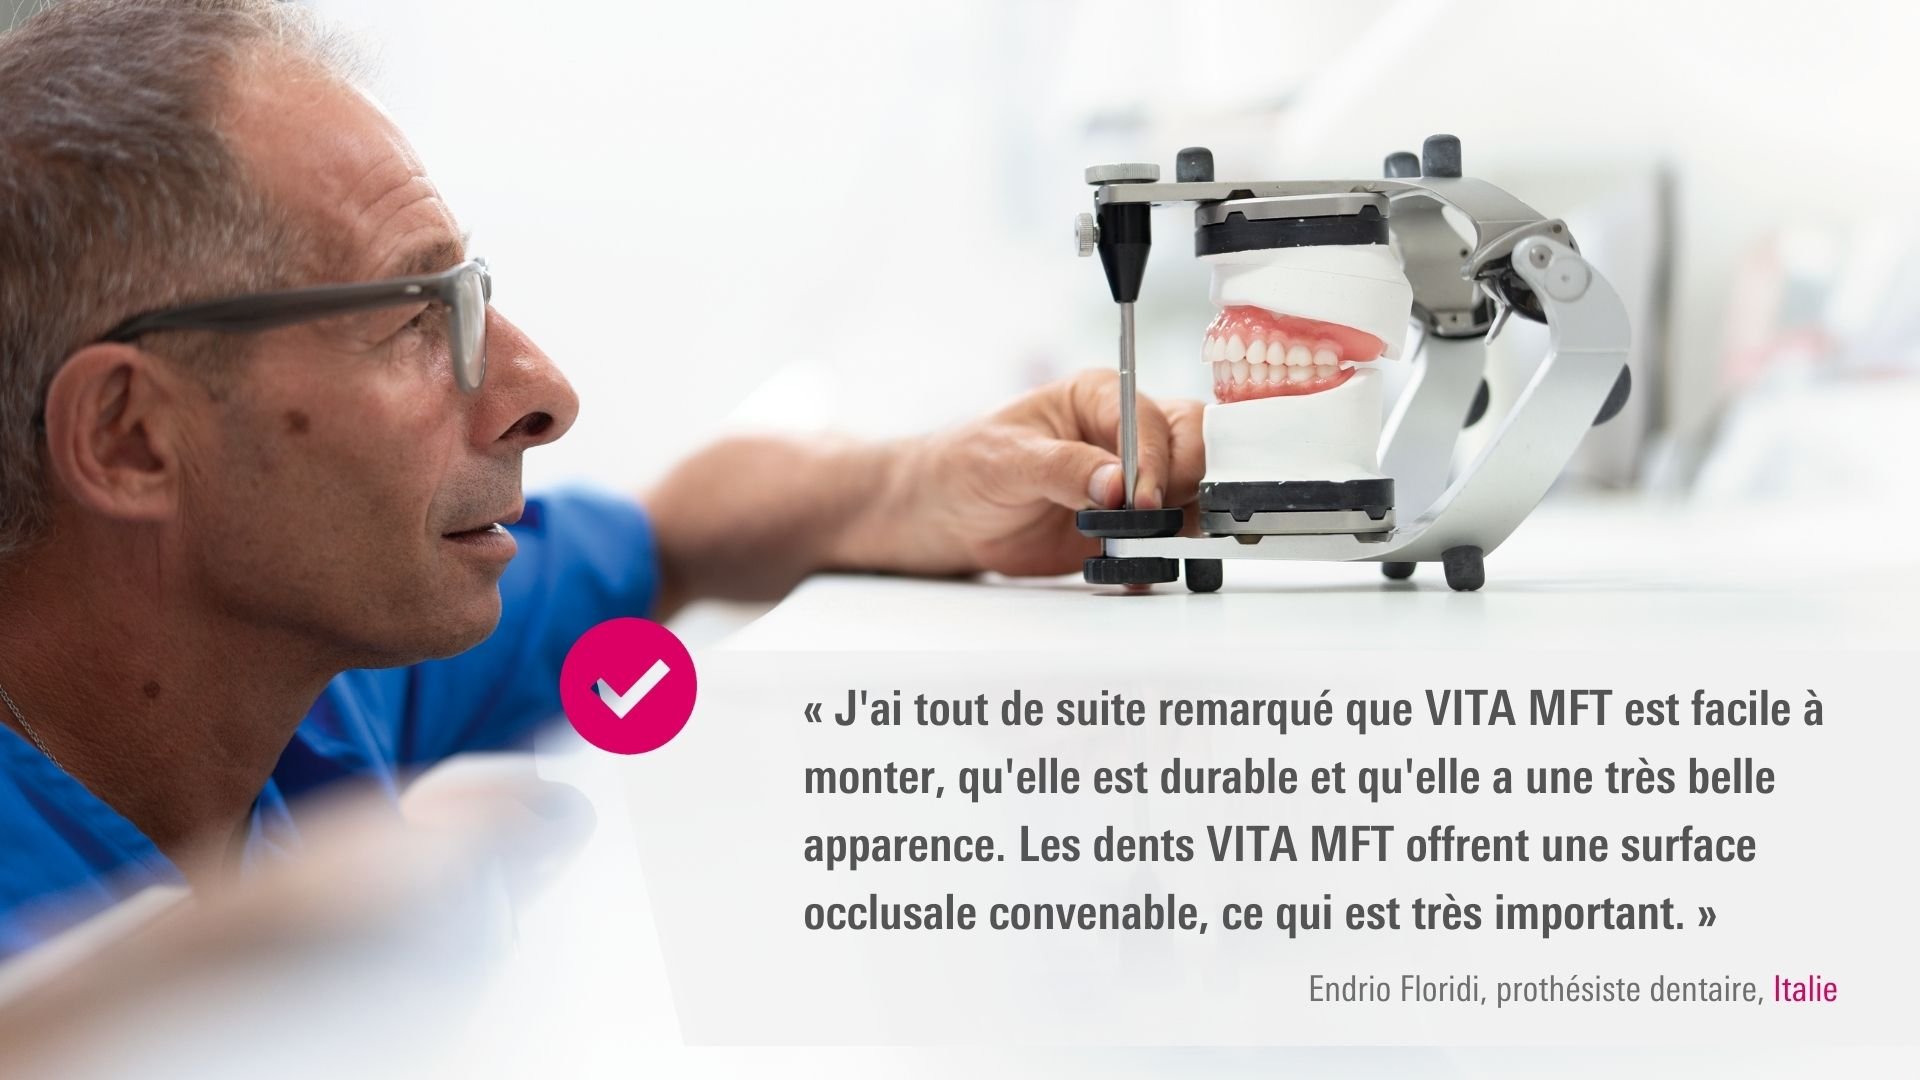 VITA MFT. Endrio Floridi, prothésiste dentaire, Italie